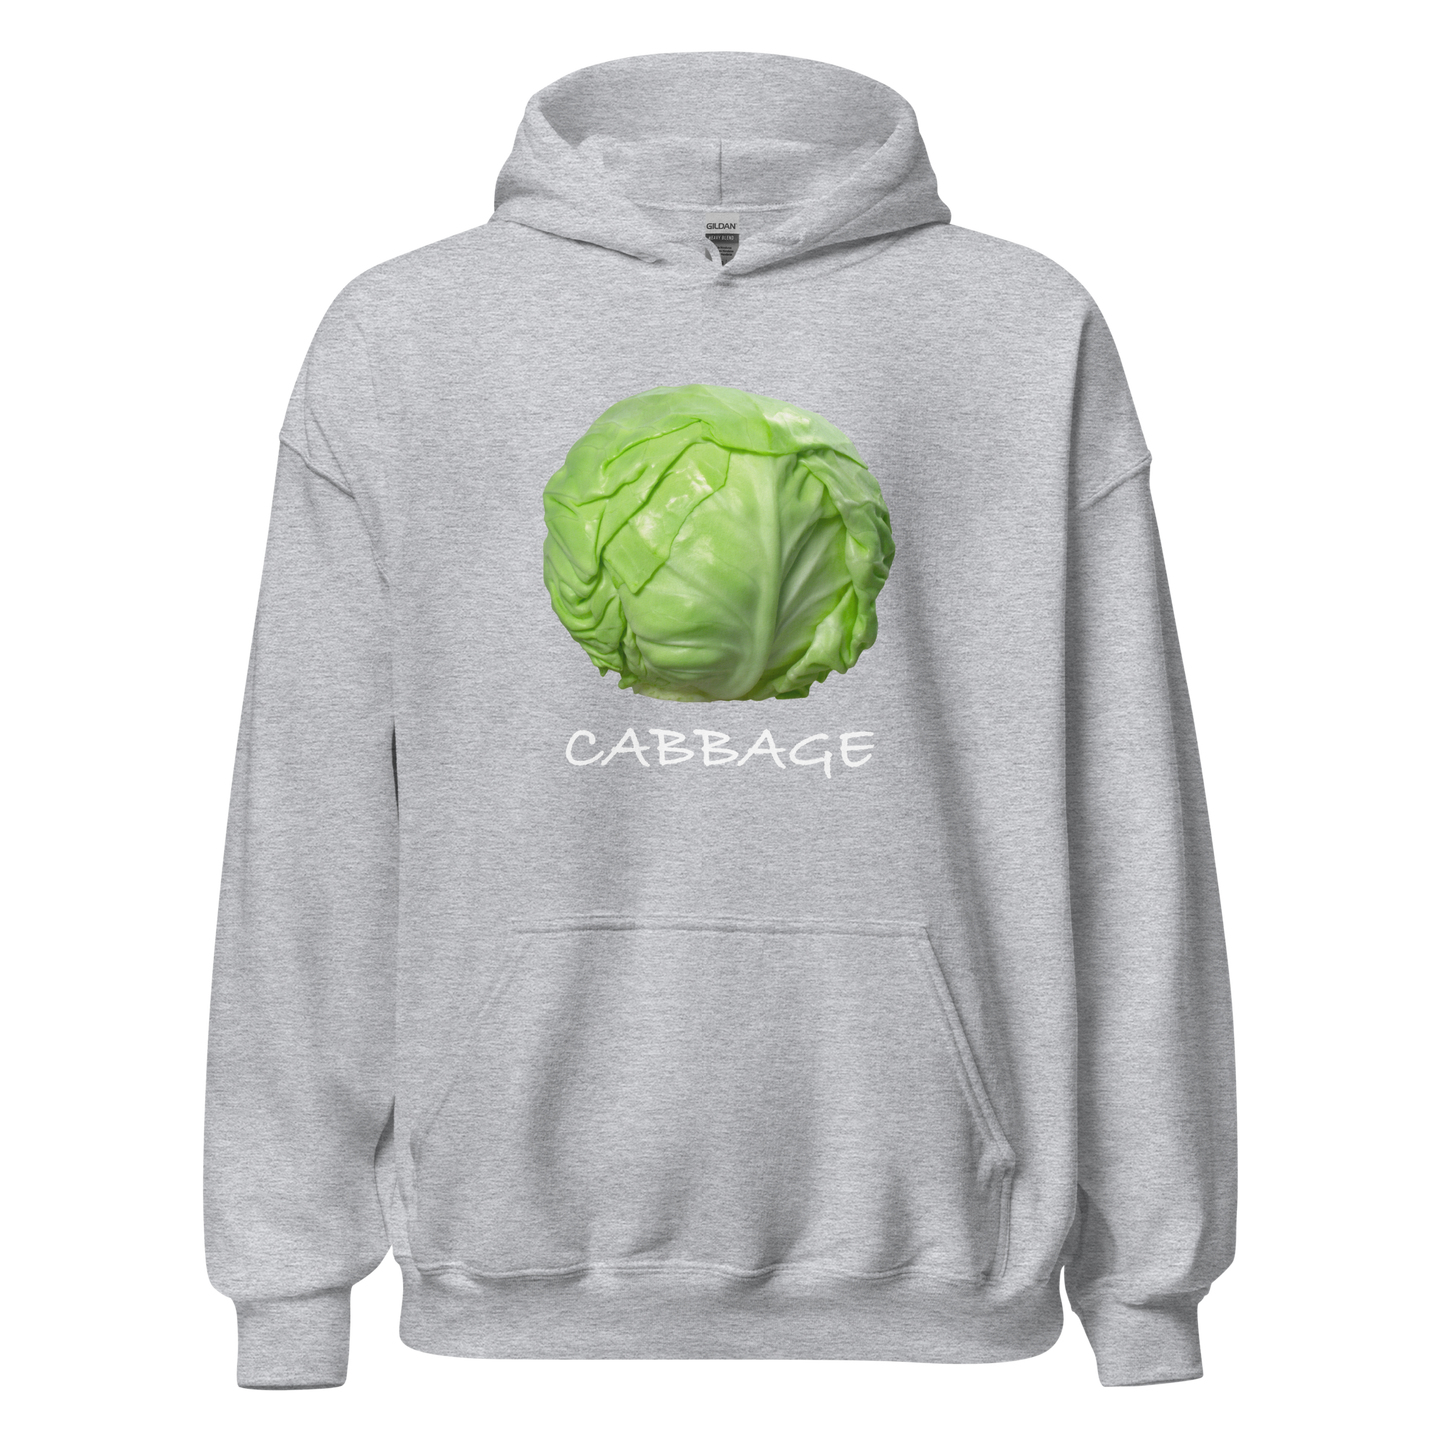 Cabbage Hoodie